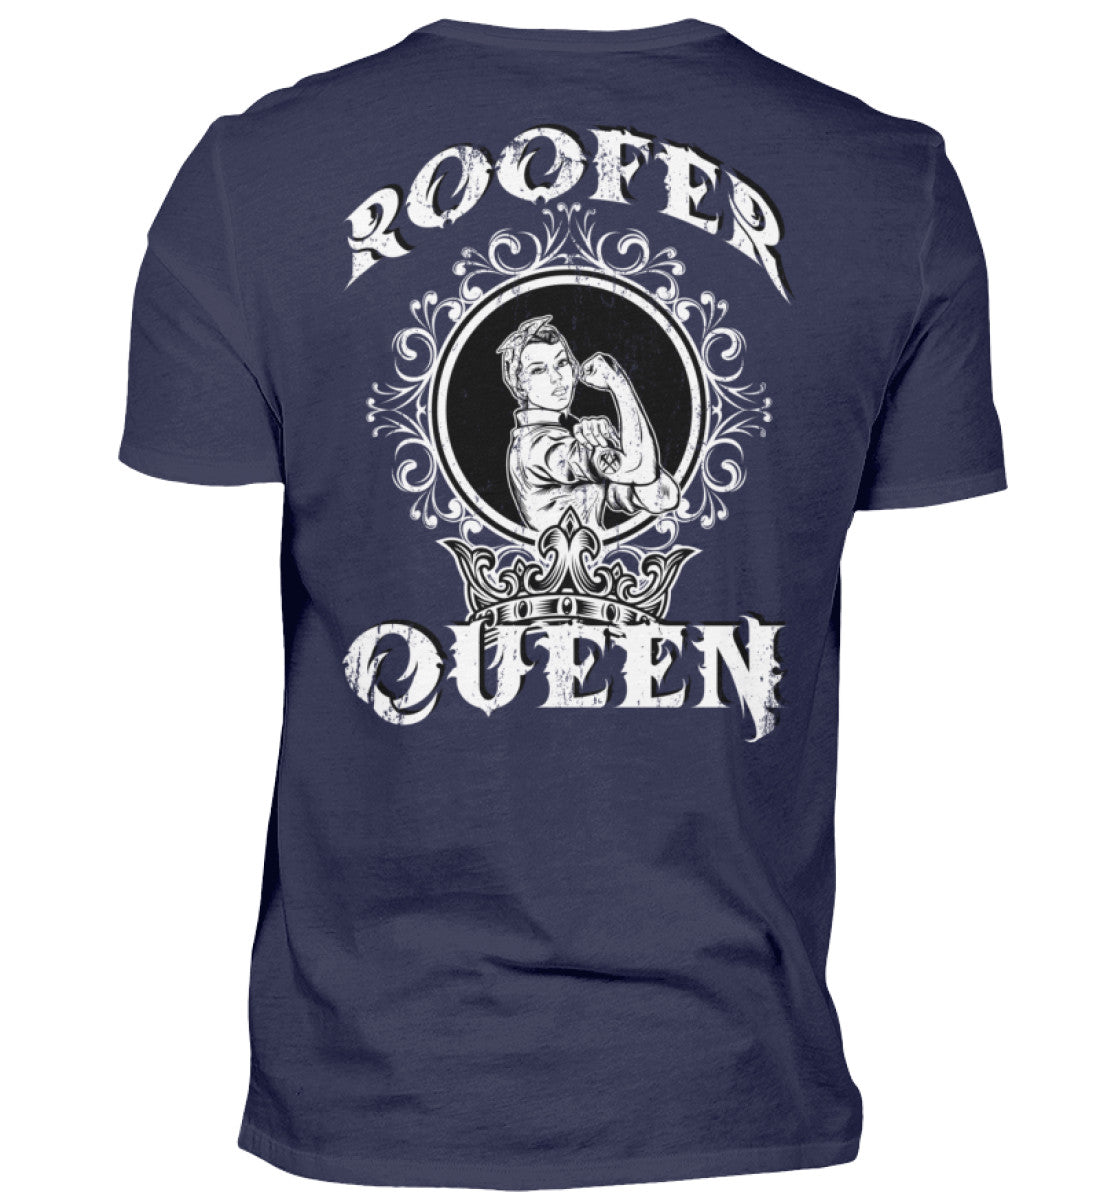 Roofer Queen Version 1.0  - Unisex Shirt €26.95 Rooferking